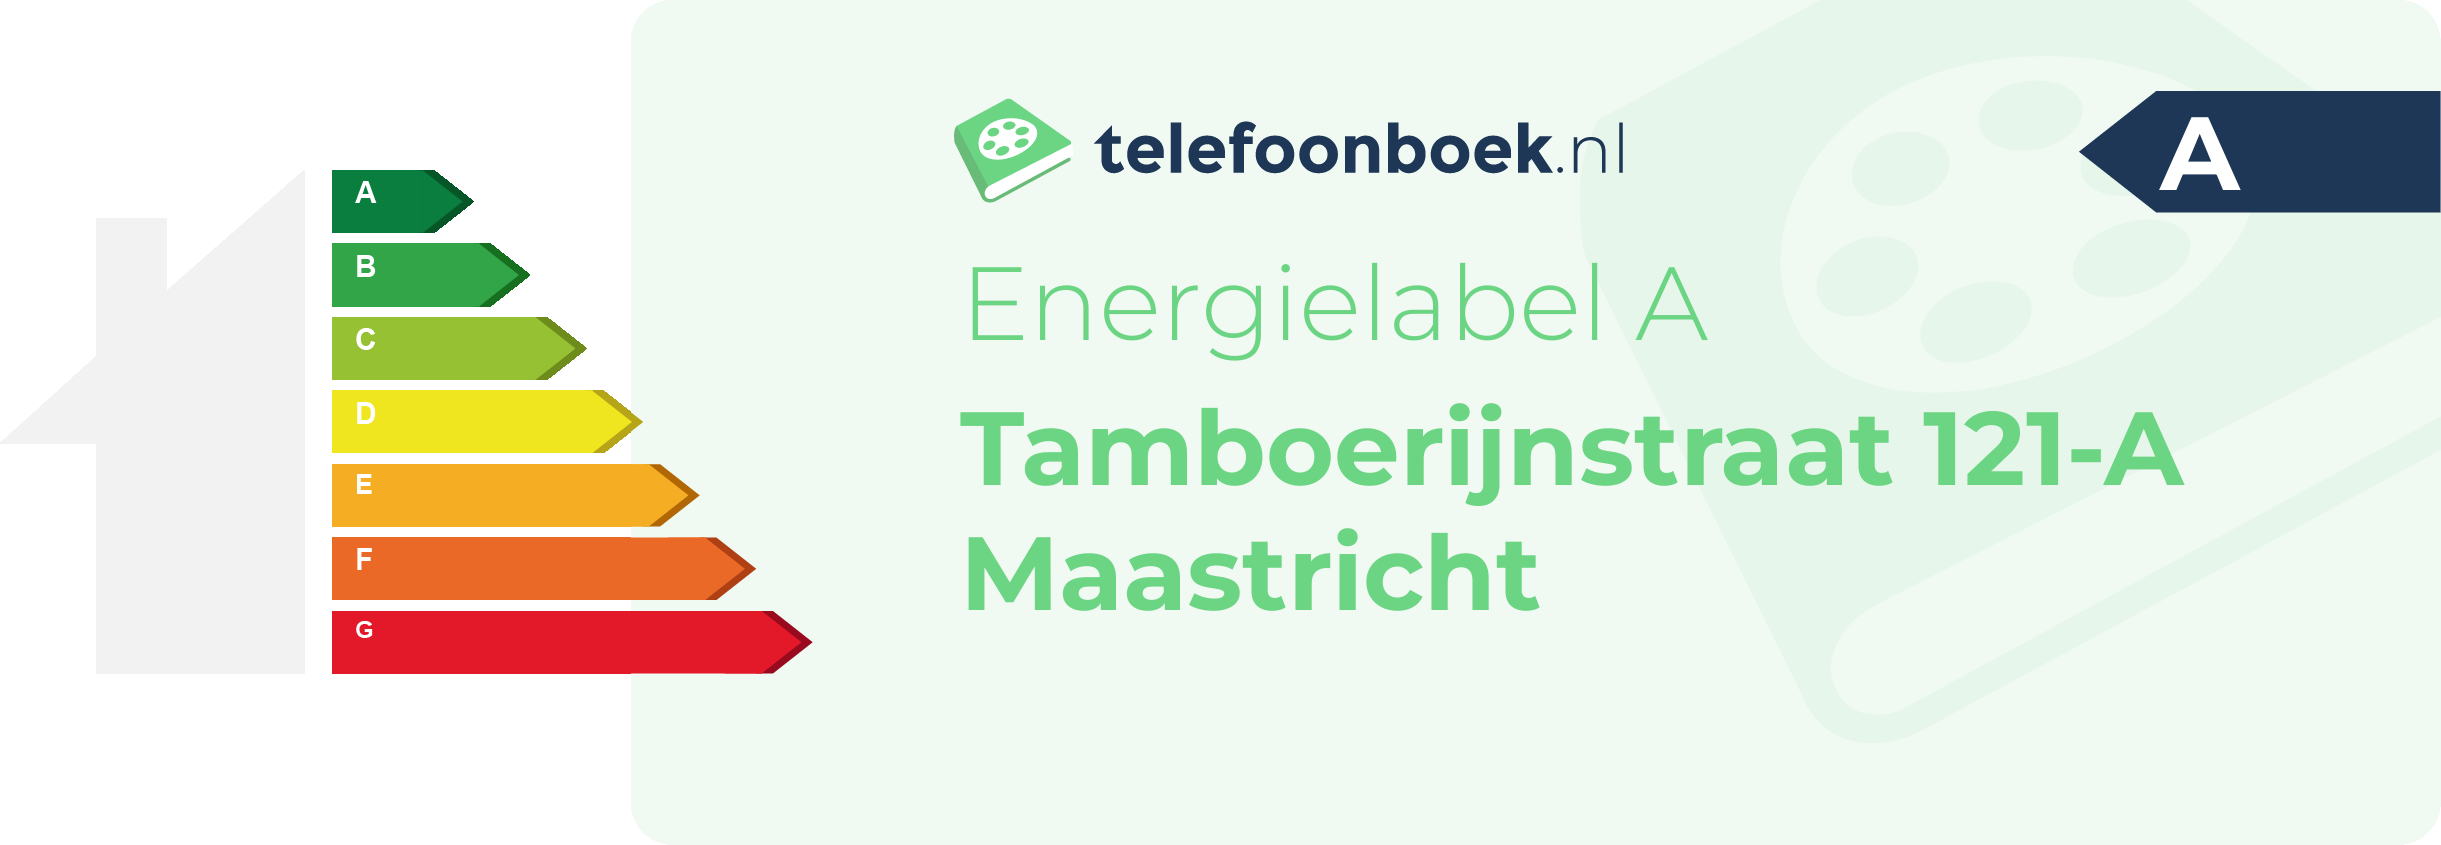 Energielabel Tamboerijnstraat 121-A Maastricht